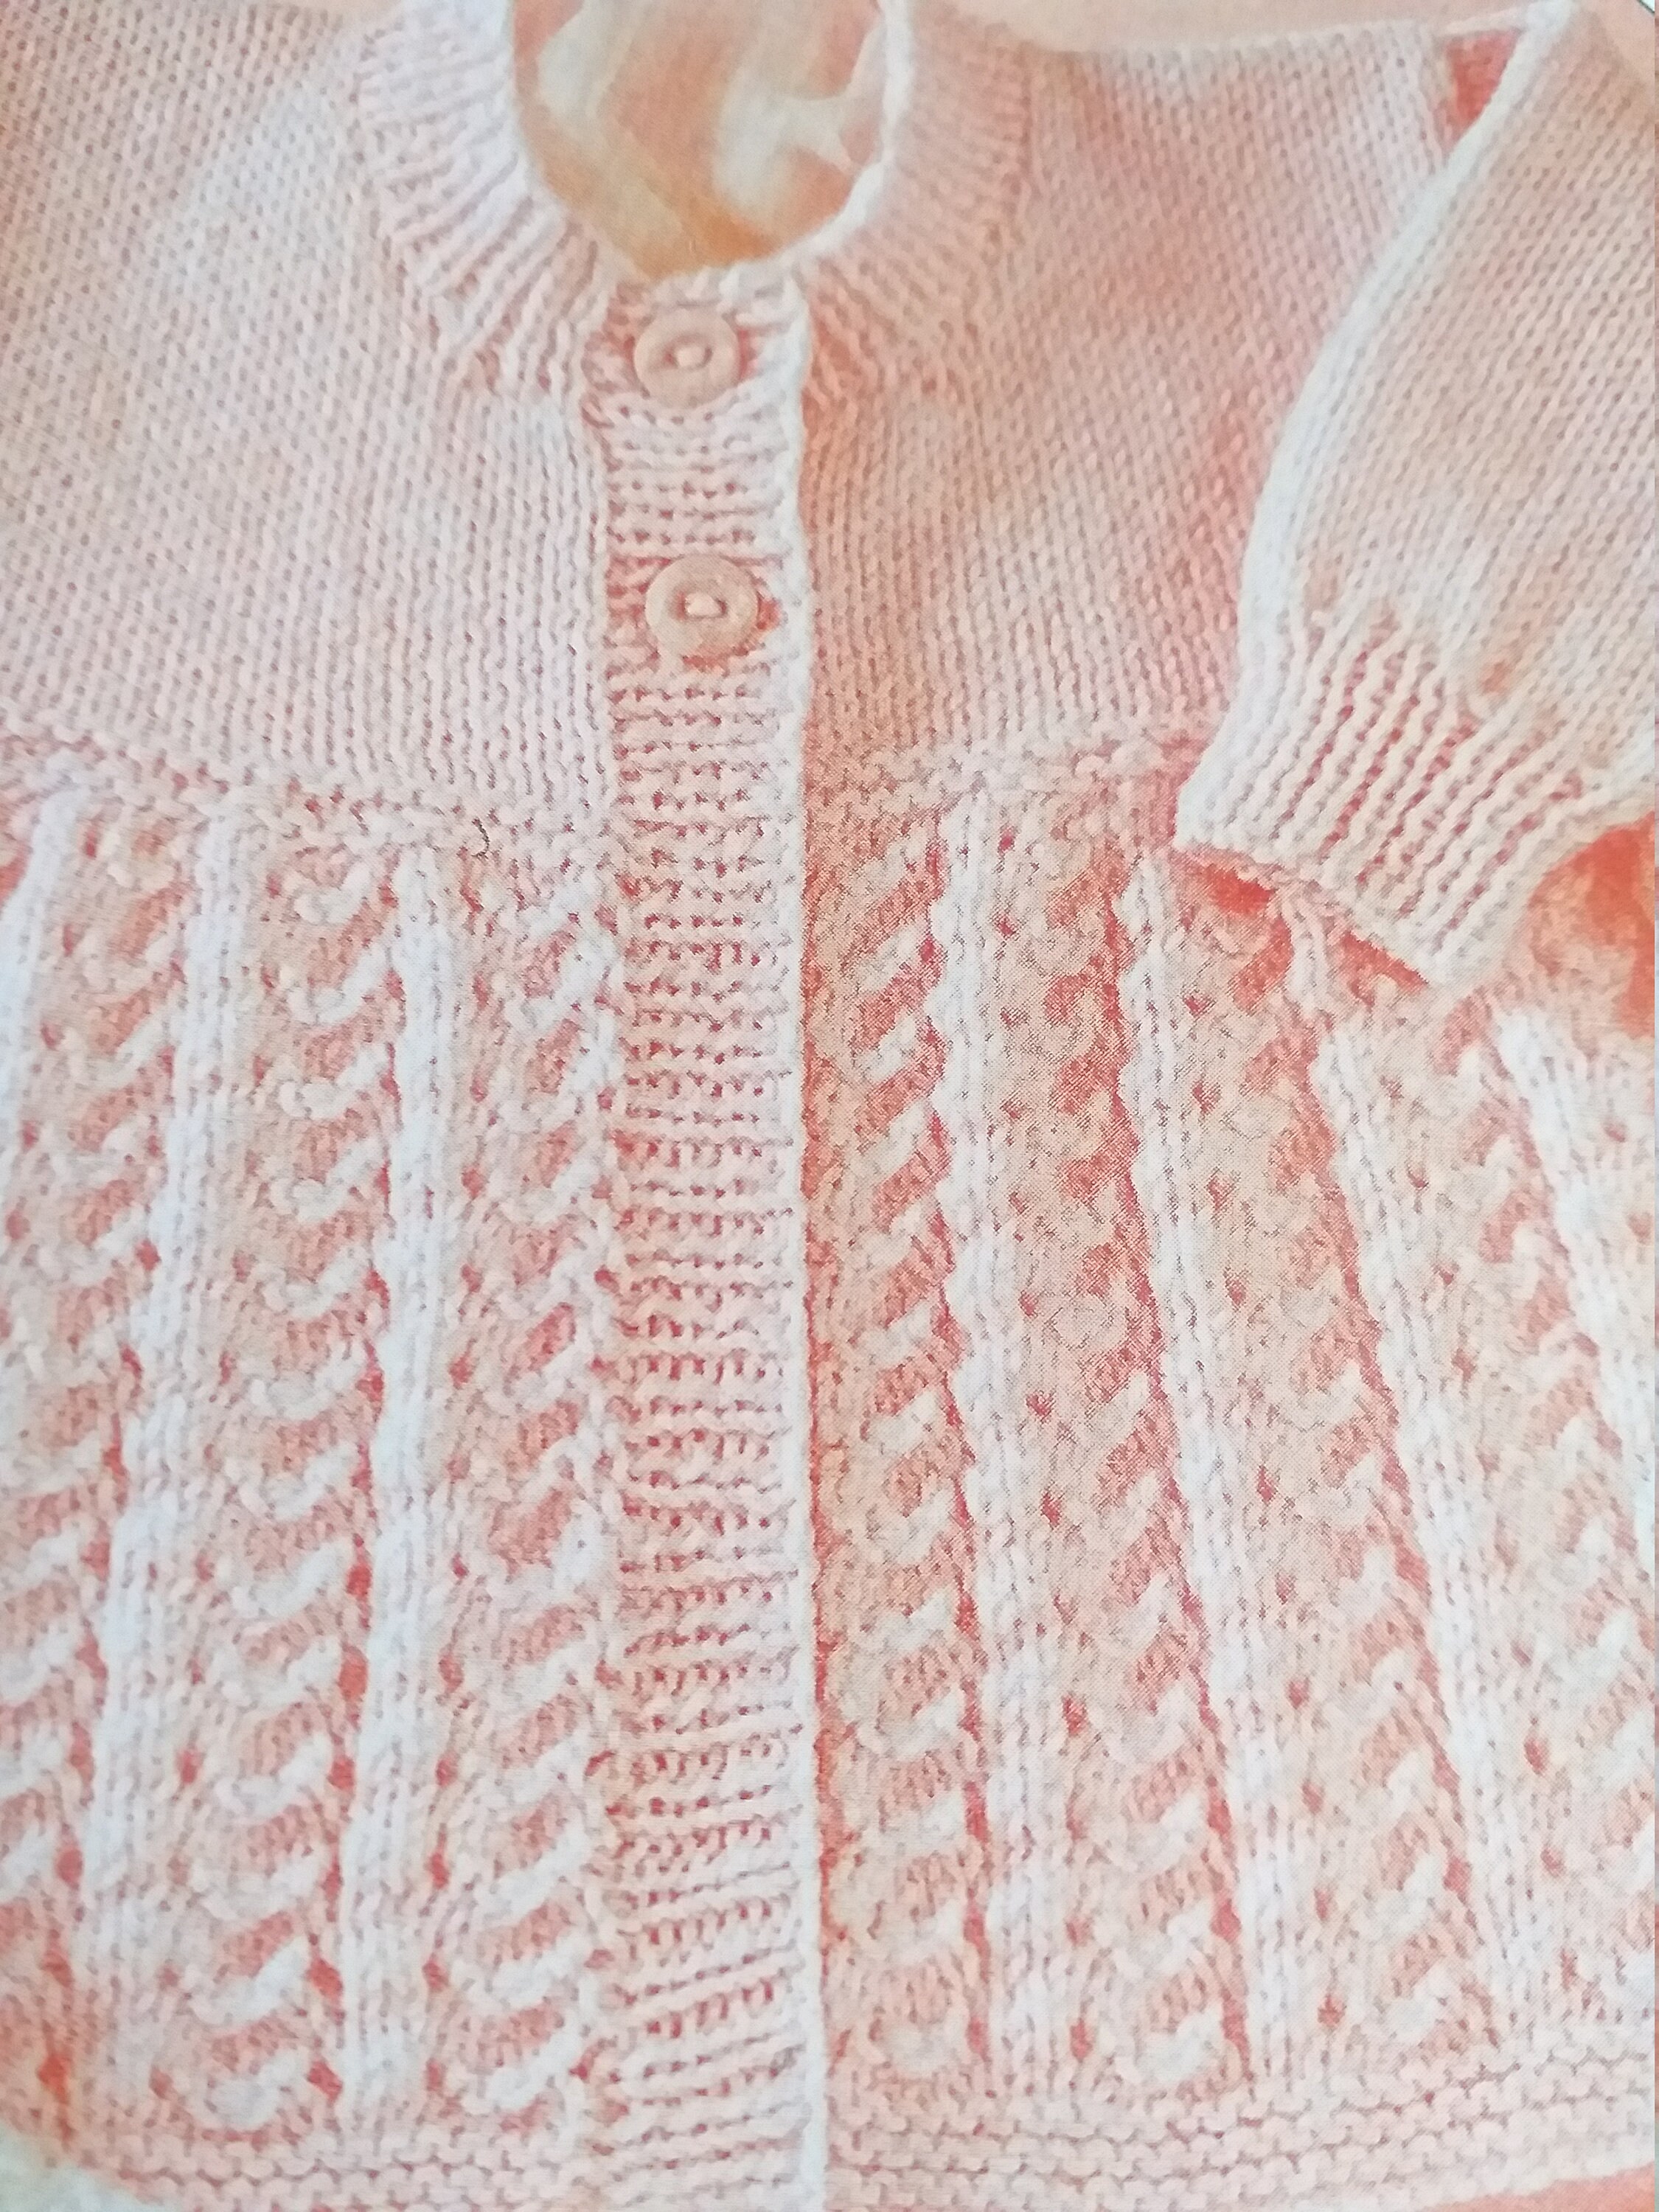 UKHKA Knitting Pattern baby Cardigans Baby Knitting - Etsy UK